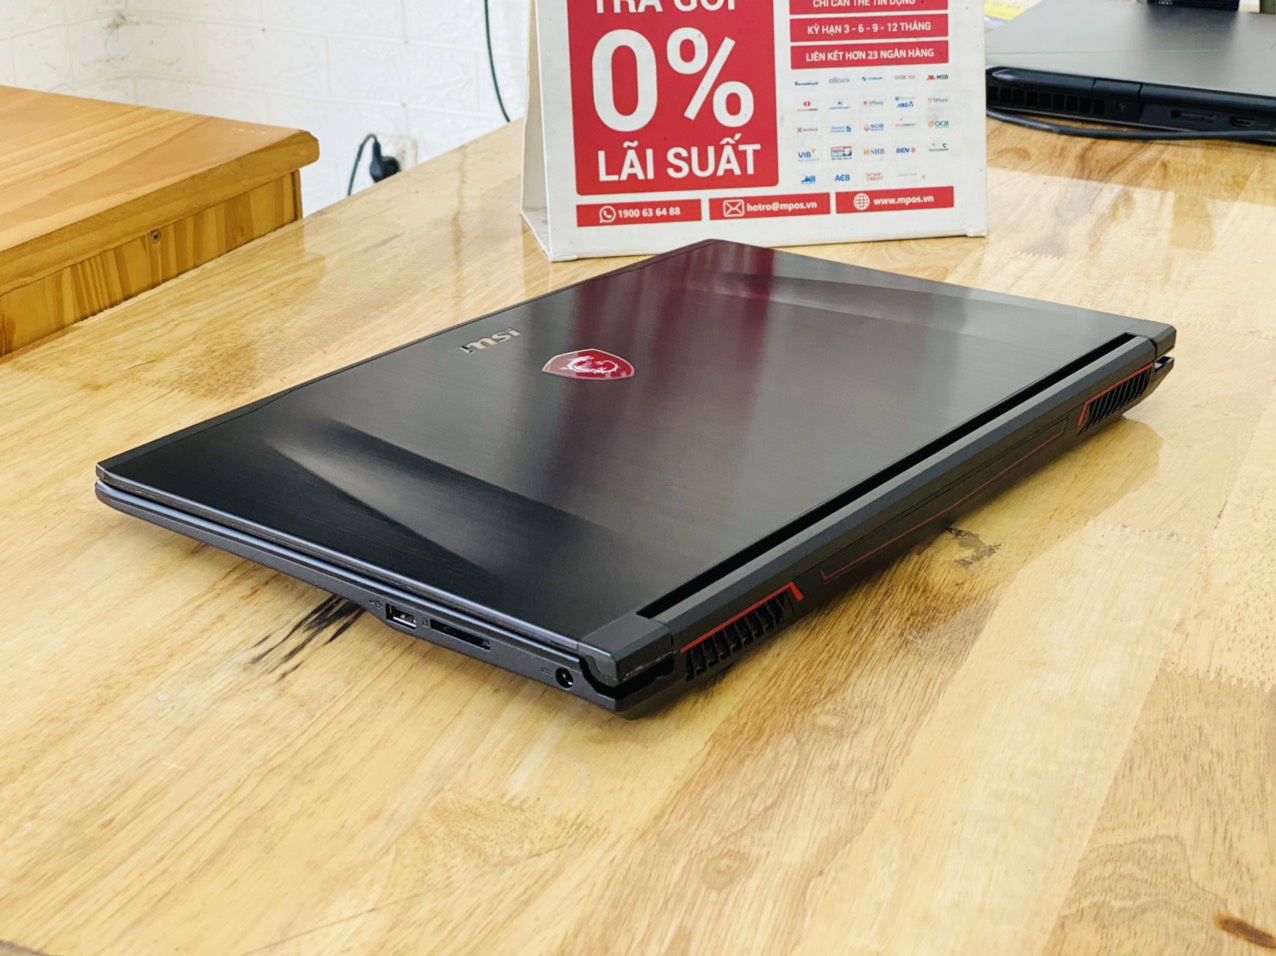 Tải +999 Hình Nền Động Cho Laptop 15.6 inch Đẹp 2018